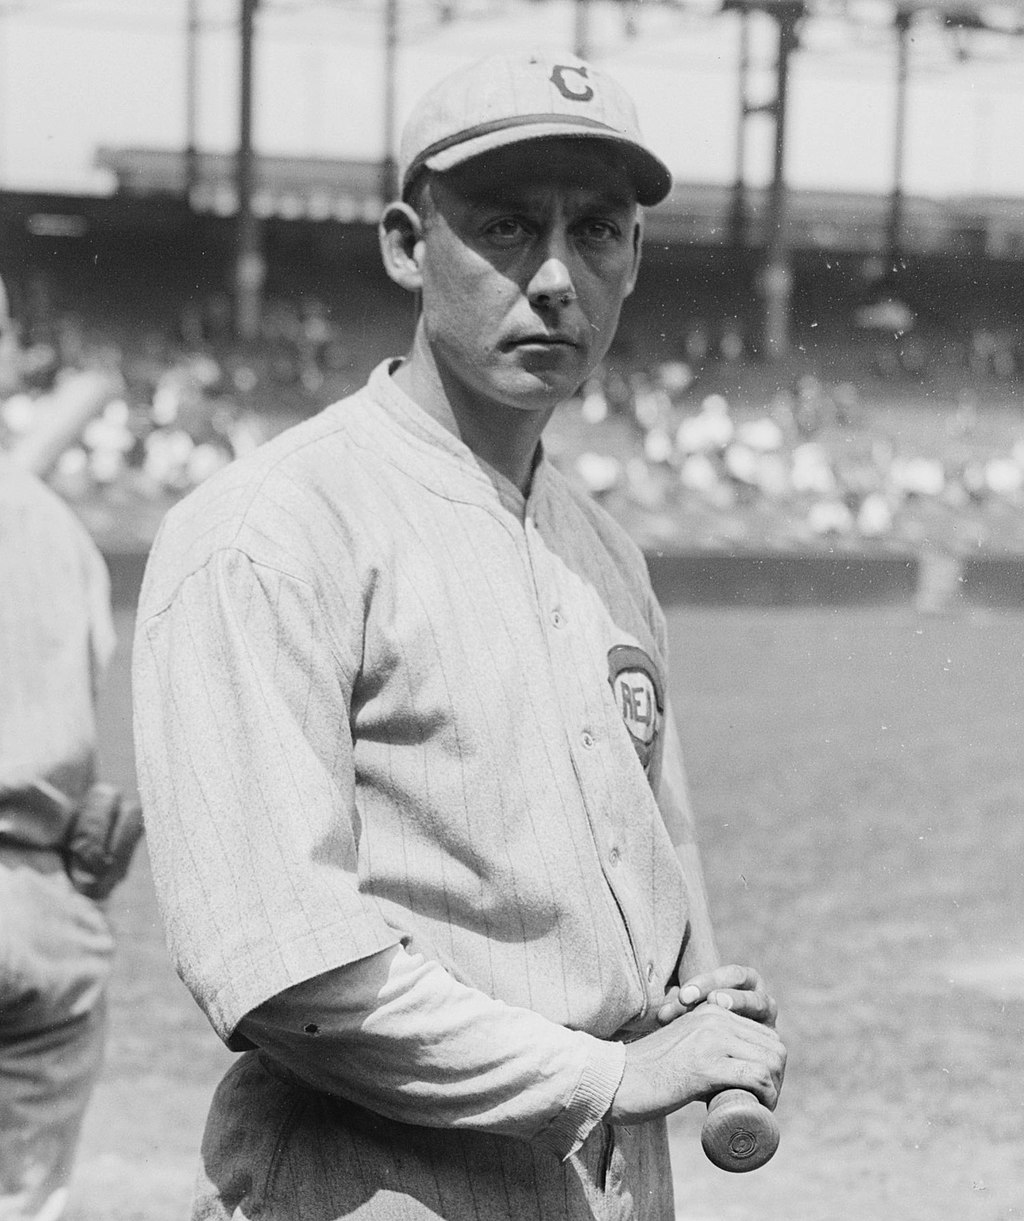 Edd Roush – Baseball Hall of Fame